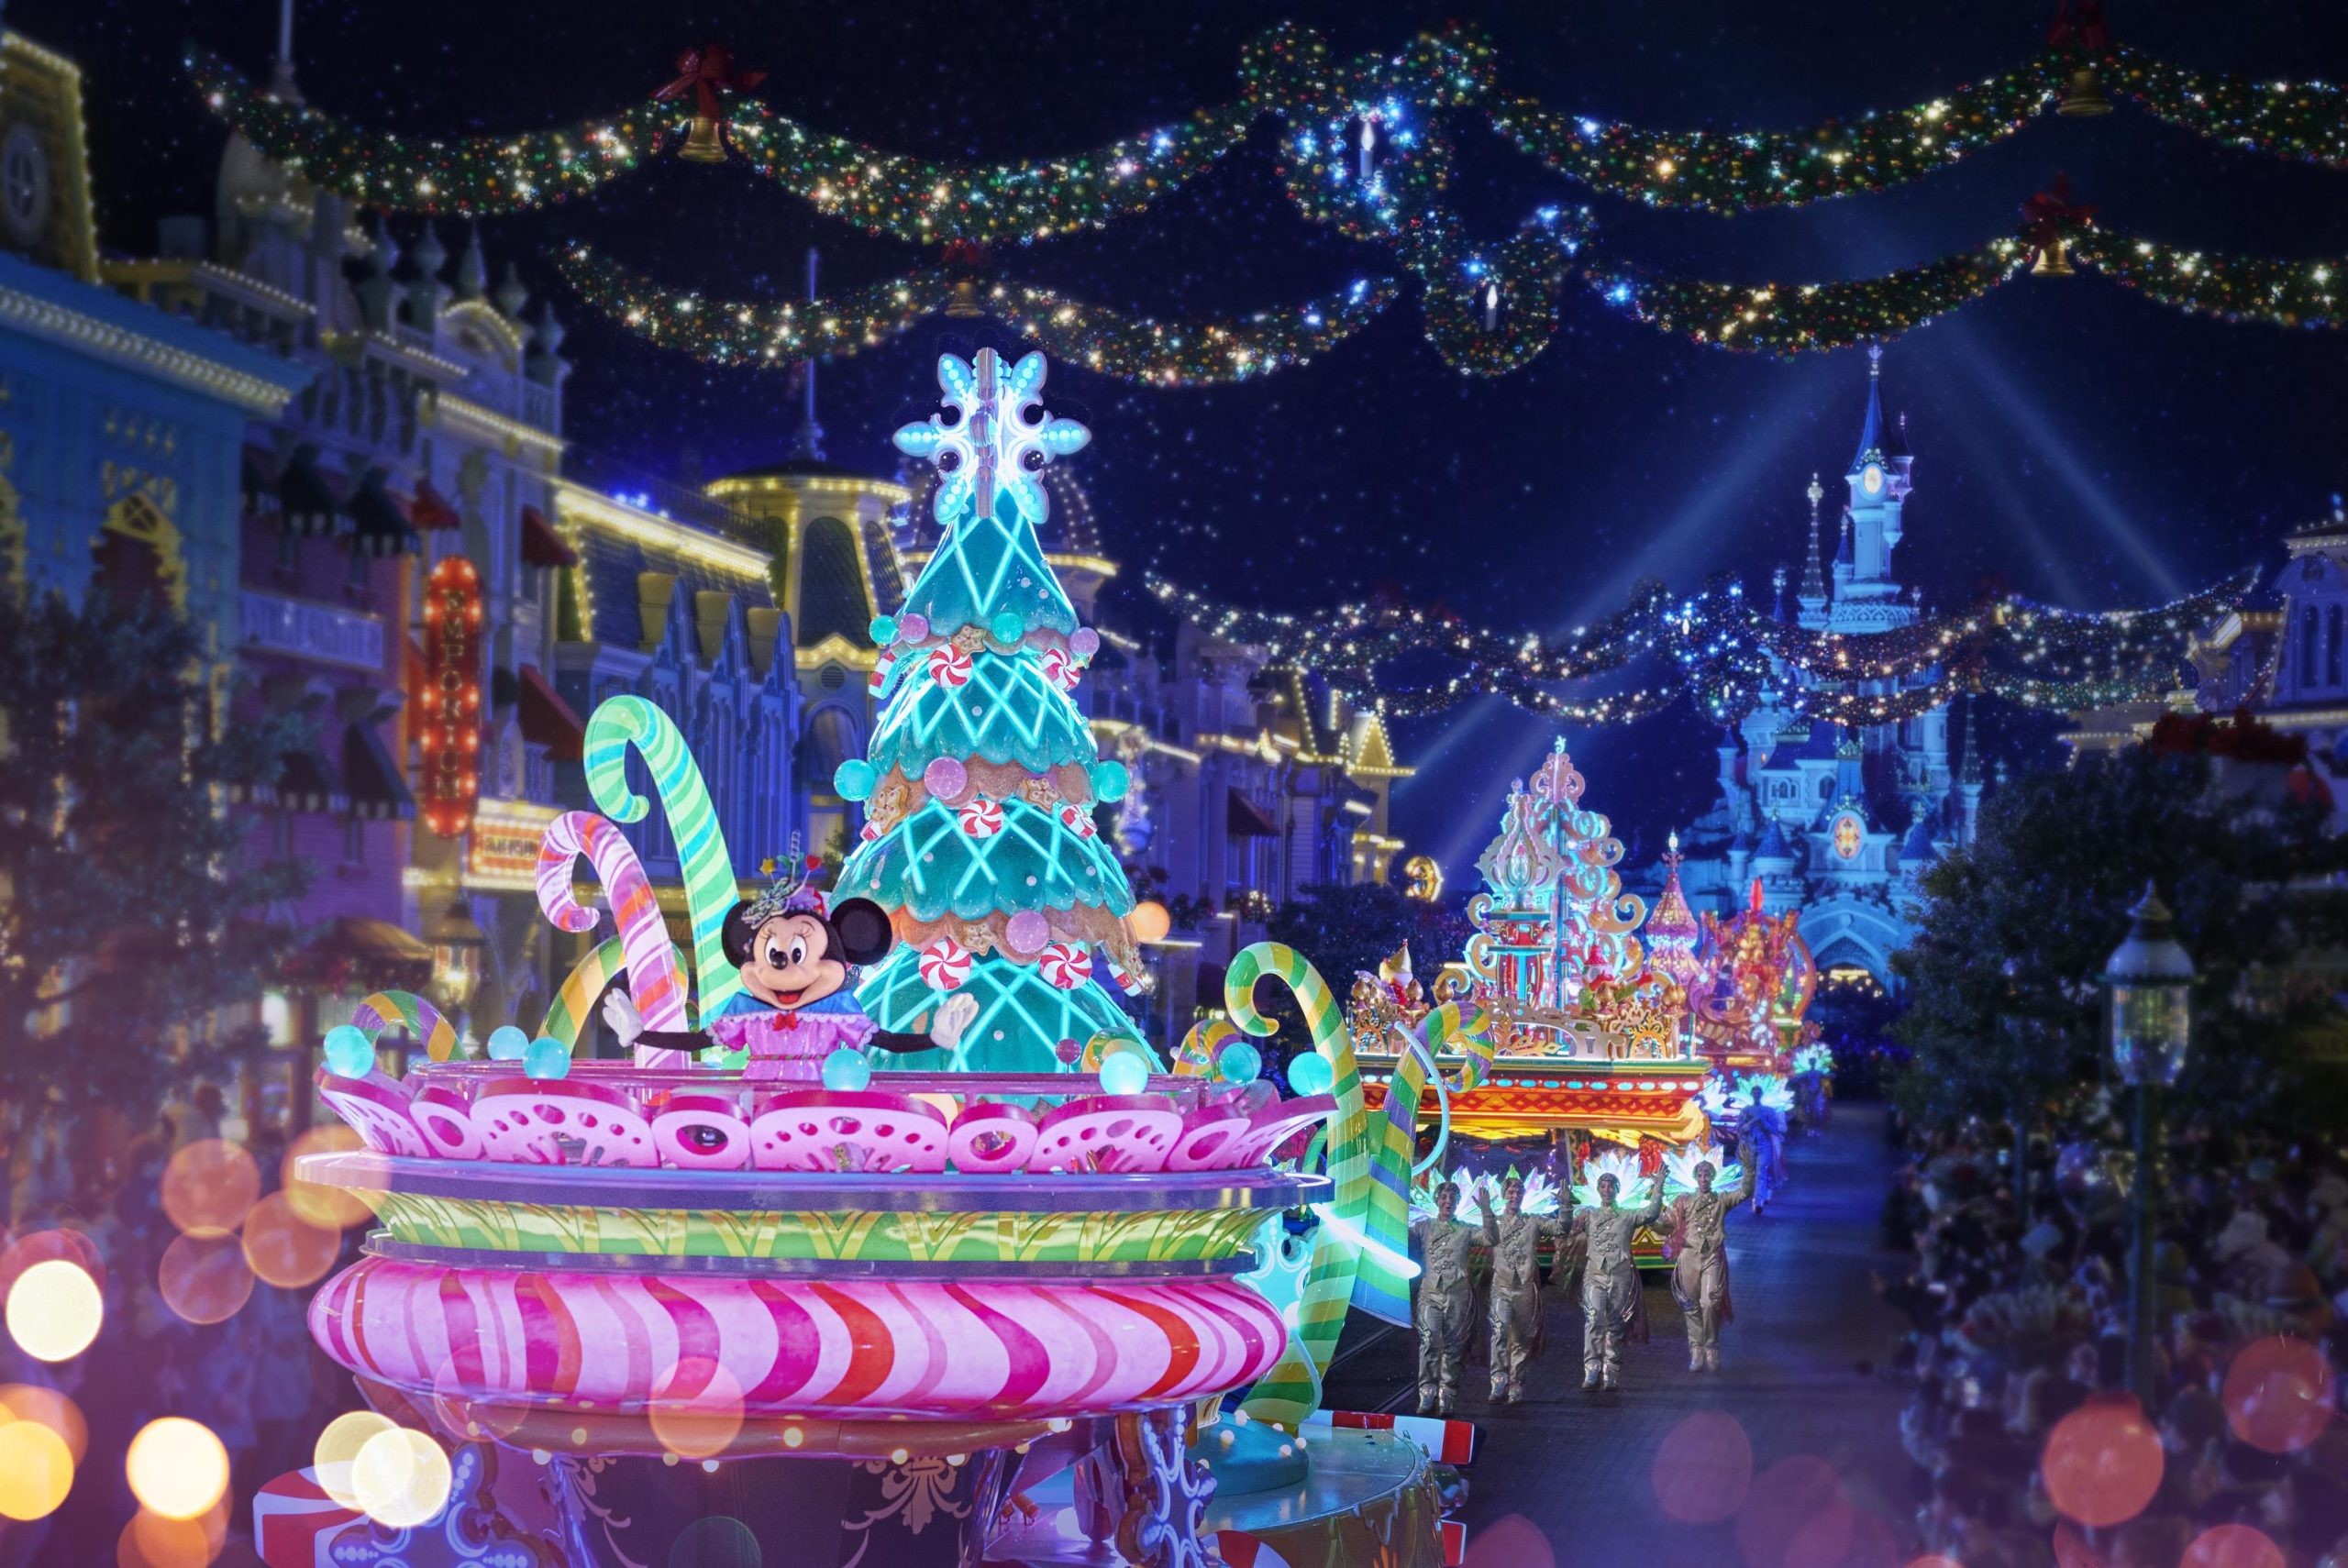 La magie de Noël sera encore plus forte à Disneyland Paris ! Le Lutécien Shop